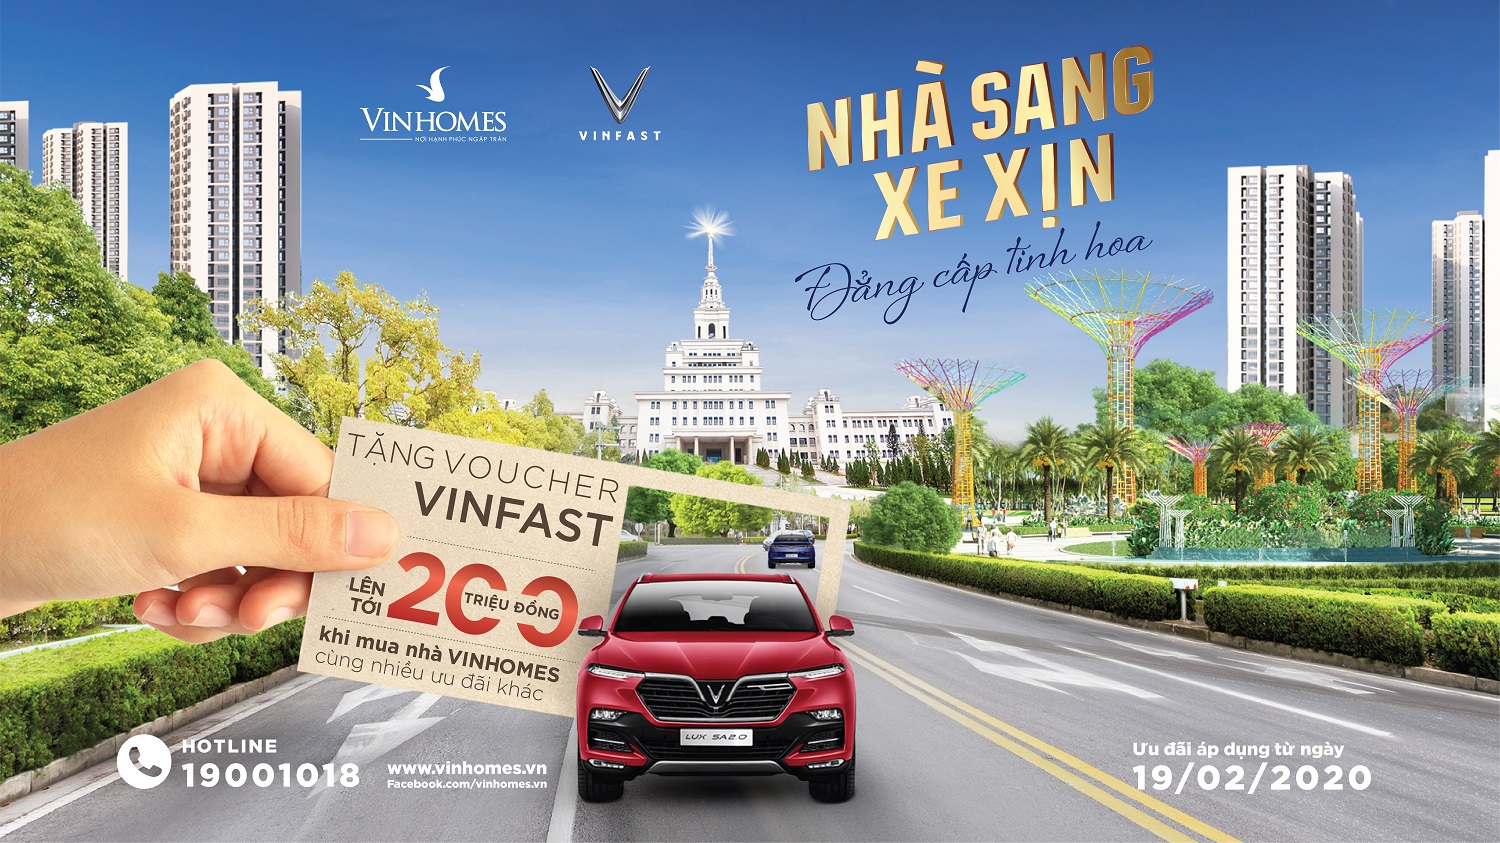 Bảng giá xe VinFast áp dụng thêm Voucher Sống Xanh và Voucher Vinhomes   VinFast Việt Nam  Các dòng xe VinFast chính hãng